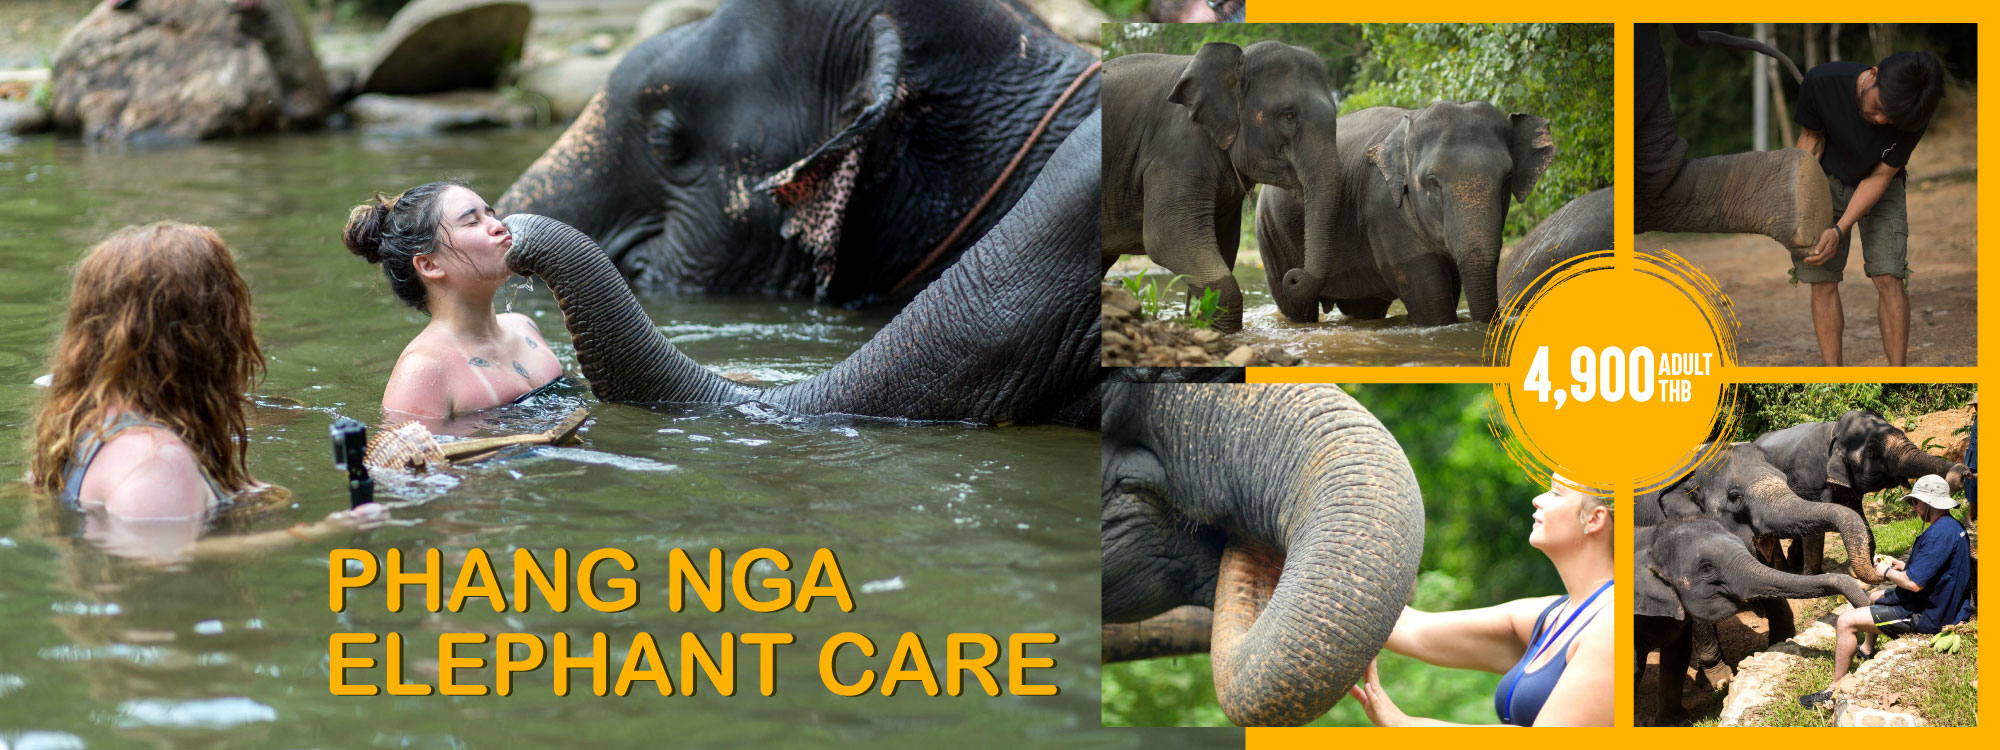 Phang Nga Elephant Care Program